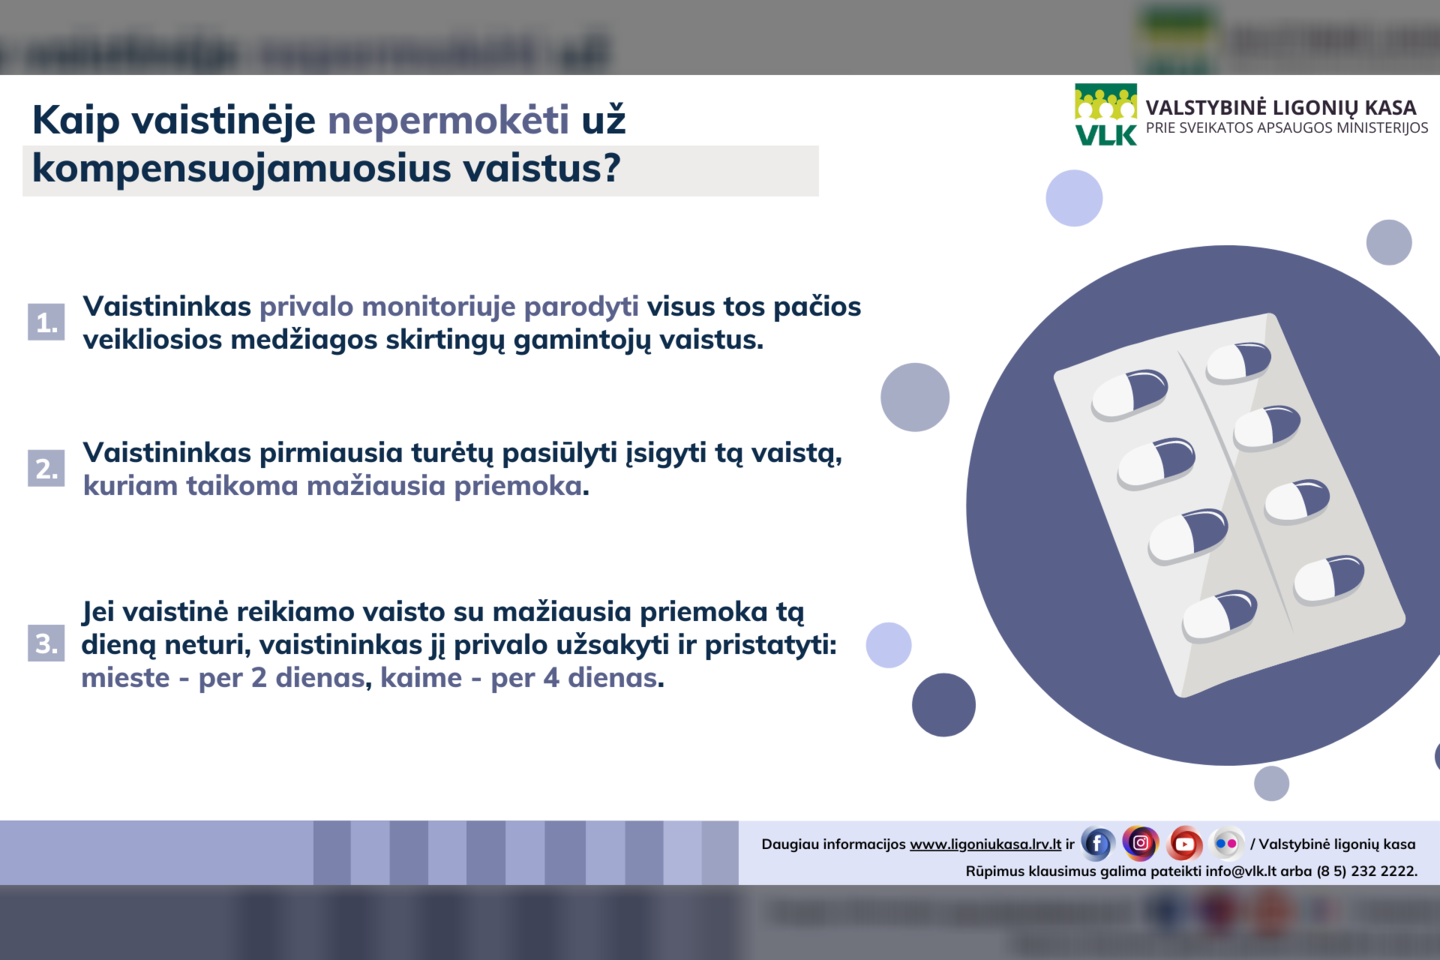 Daugiau lietuvių perka kompensuojamus vaistus.<br>VLK infografikas